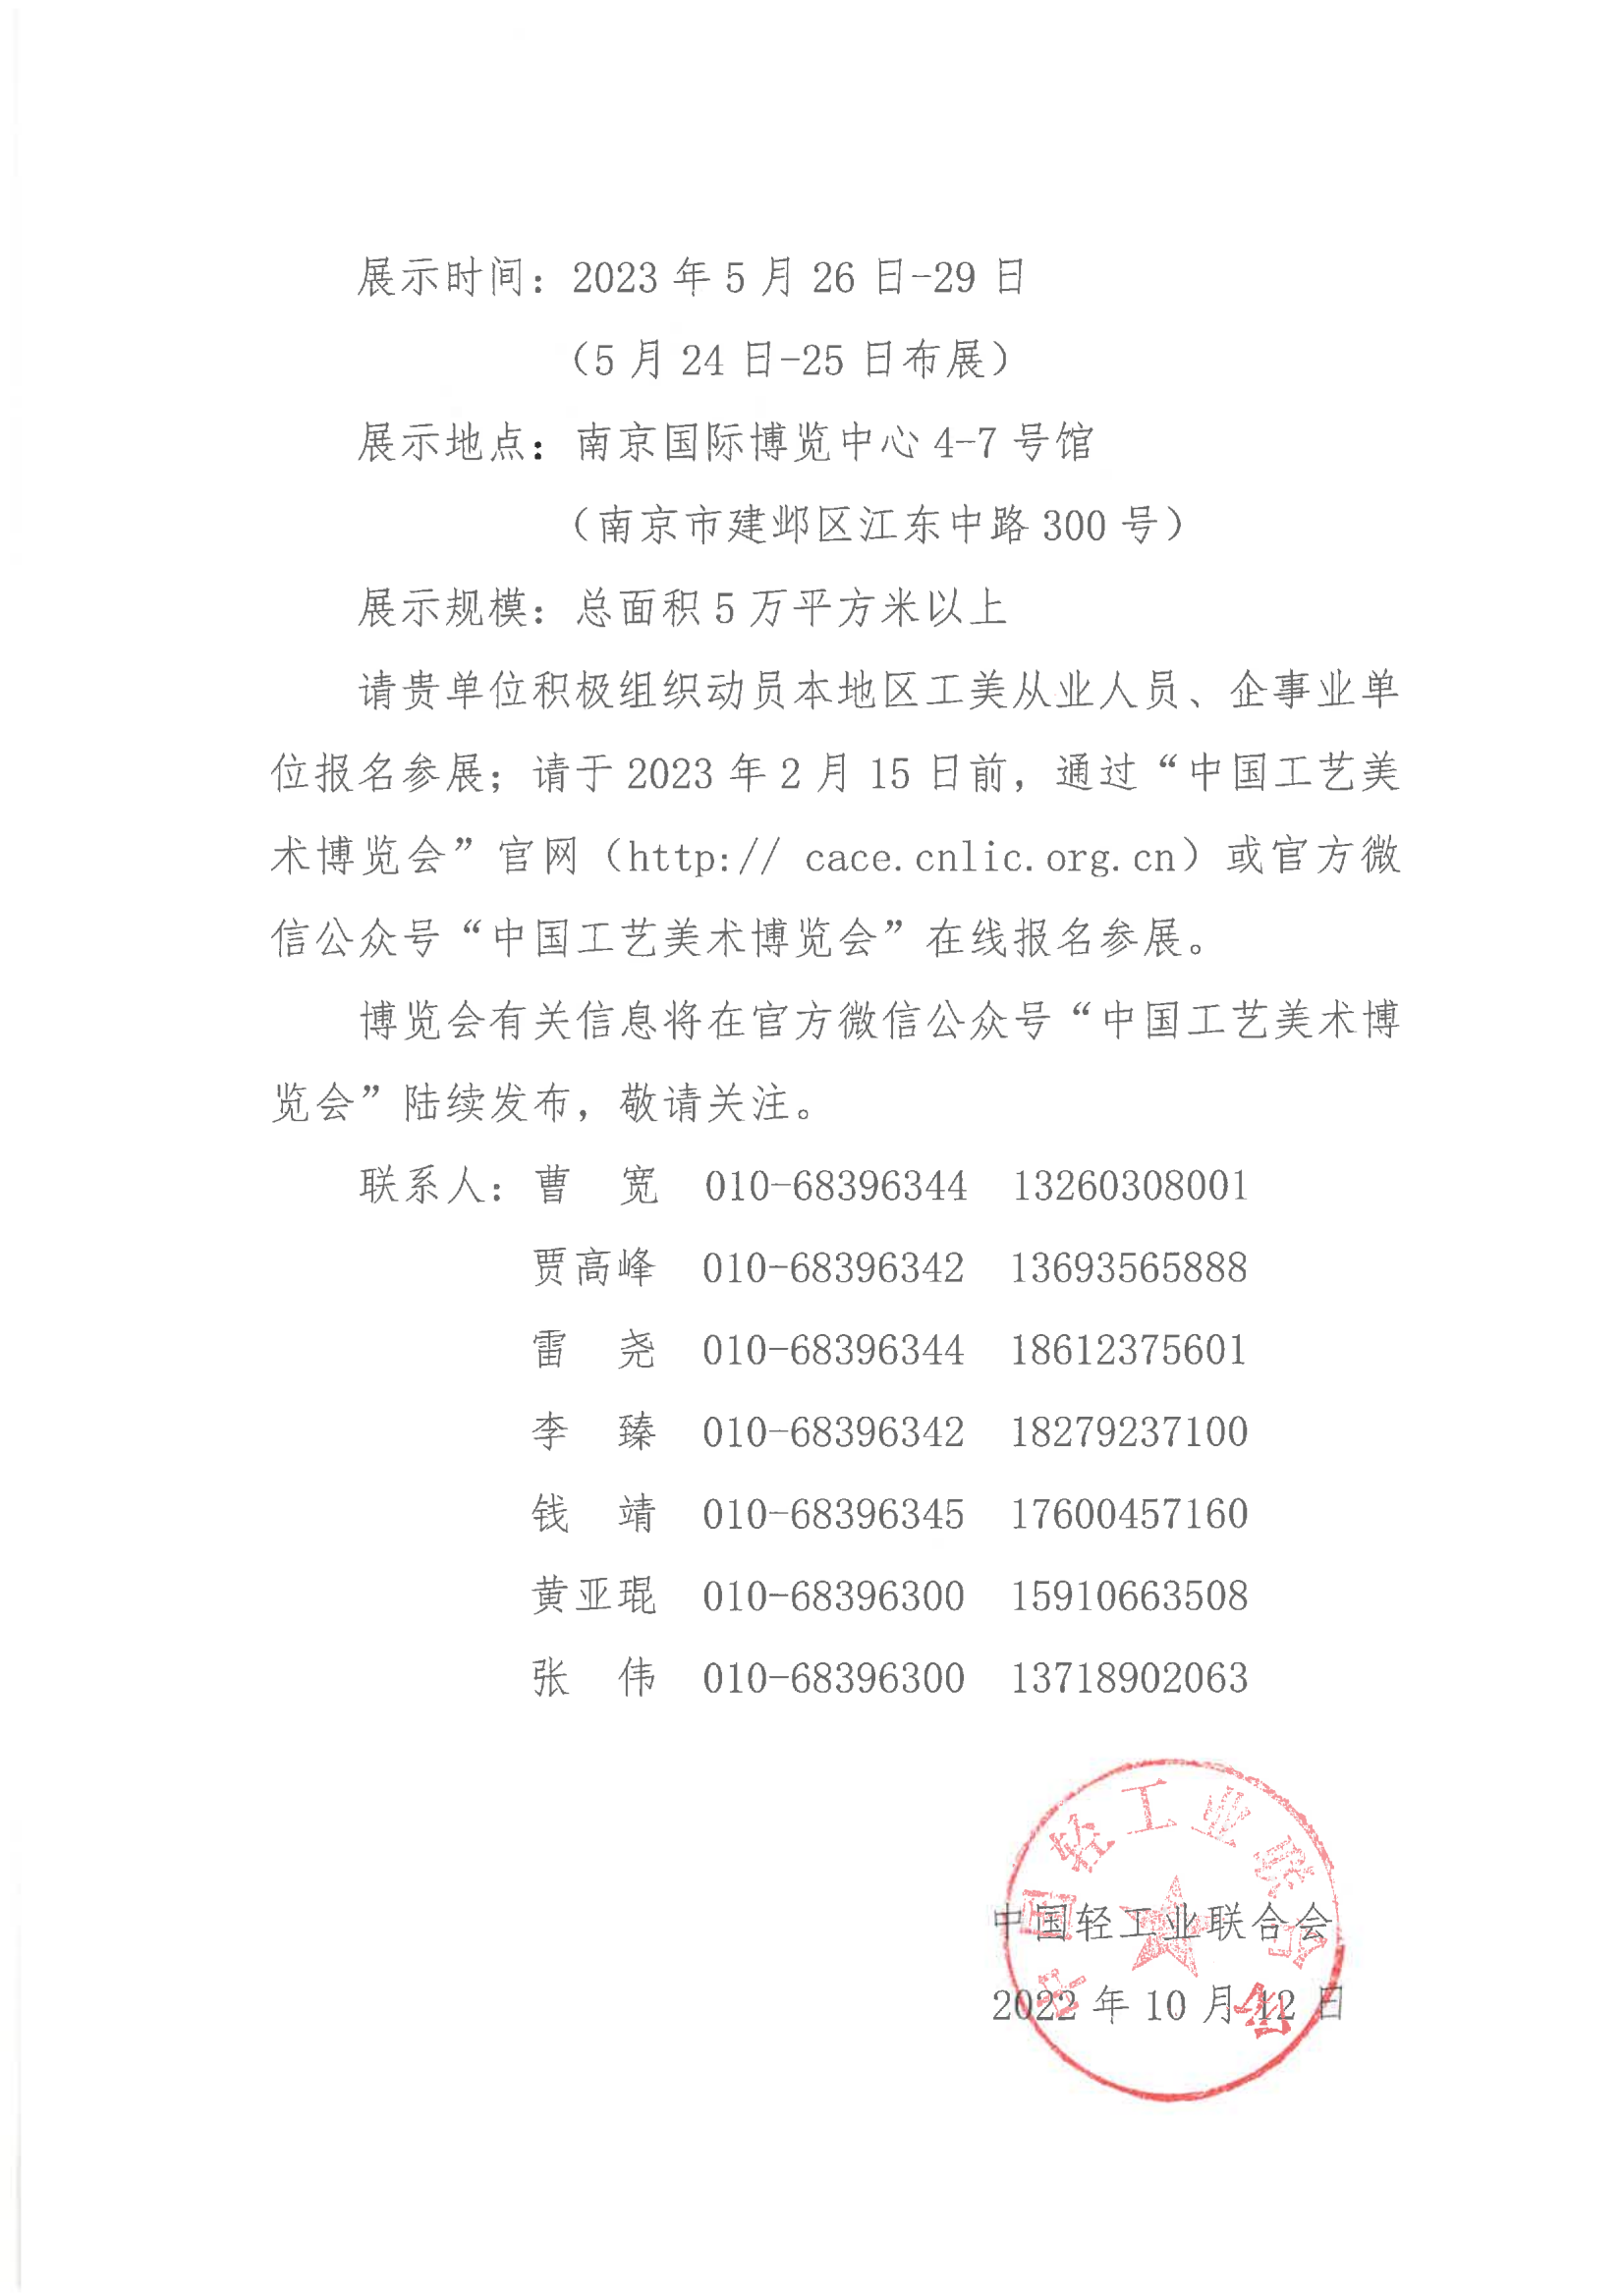 关于举办2023中国工艺美术博览会的通知（单位）_01.png